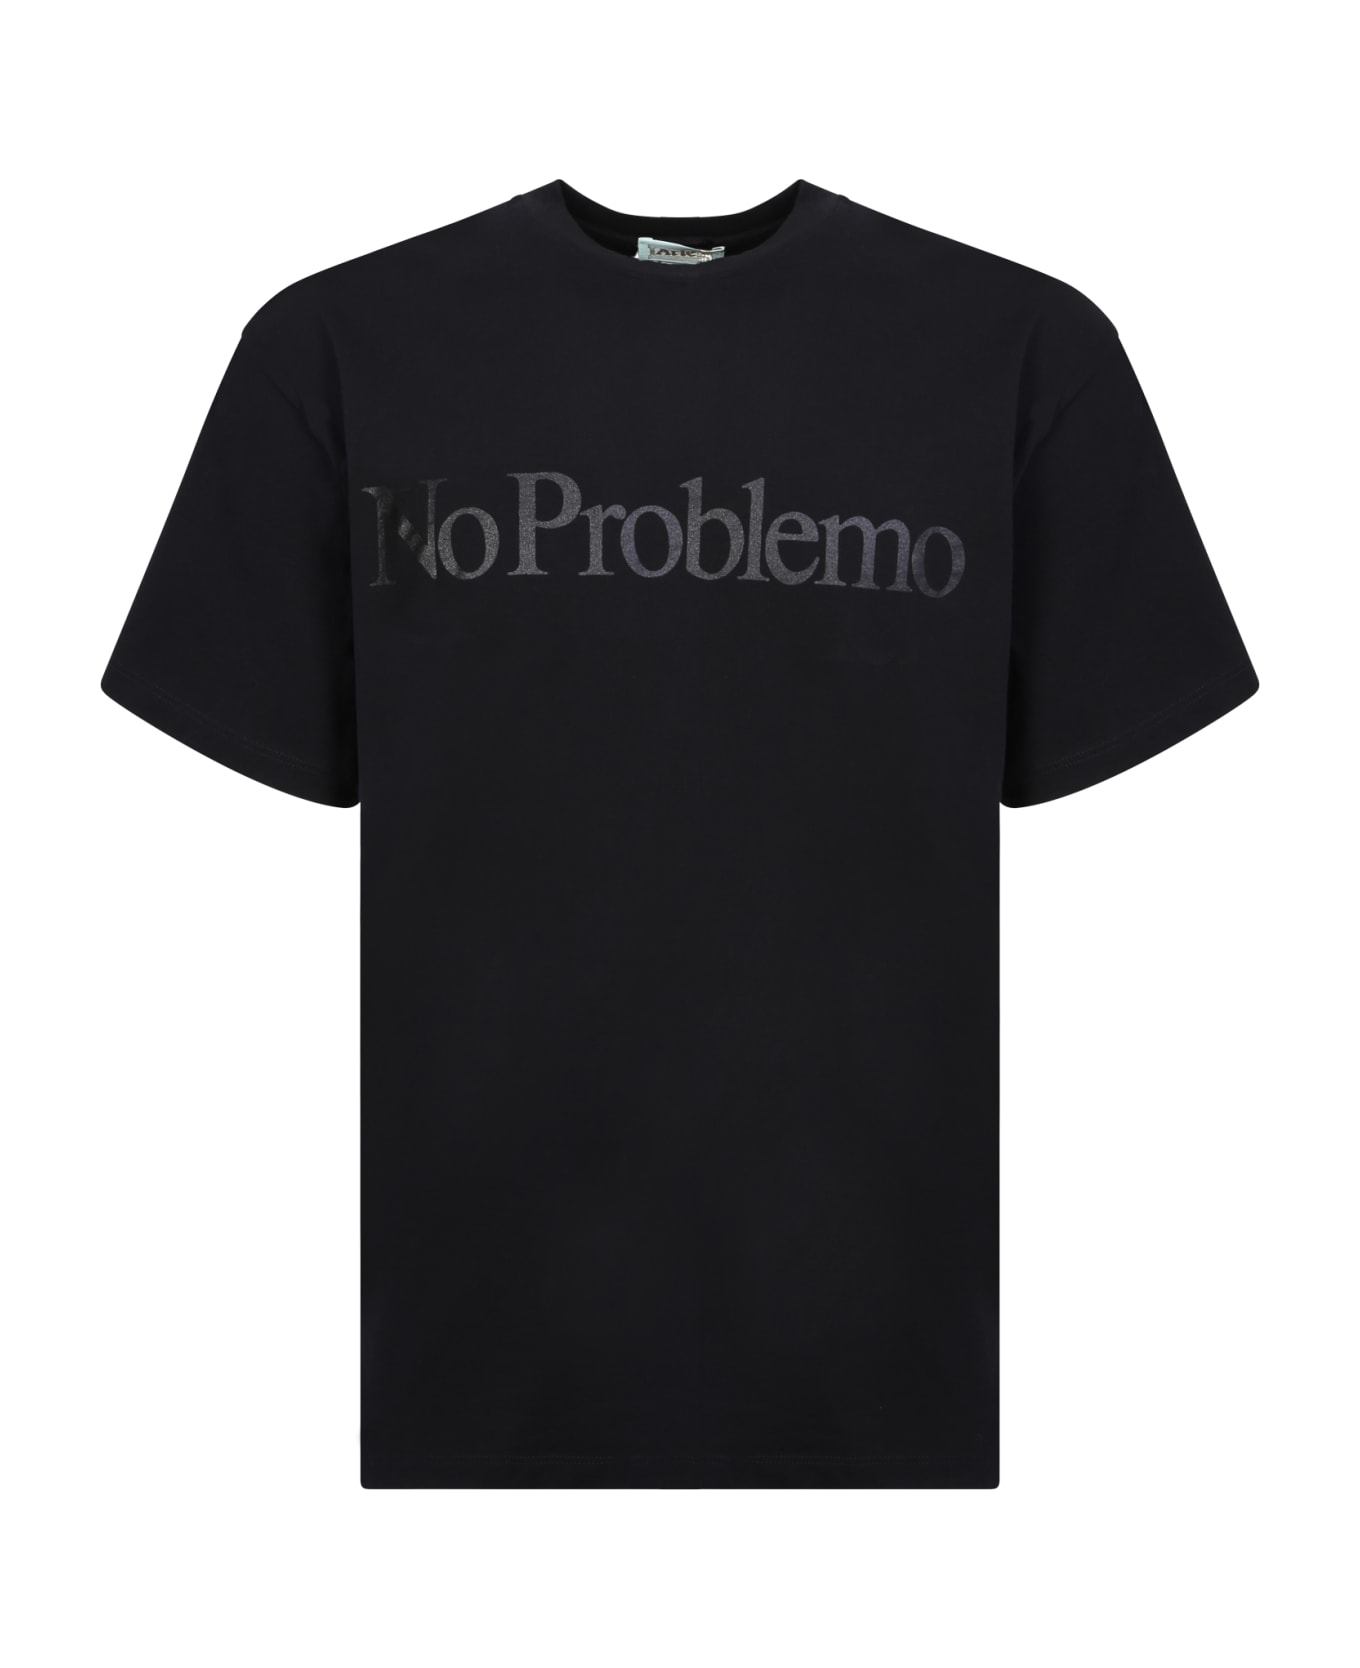 Aries No Problemo T-shirt - Black